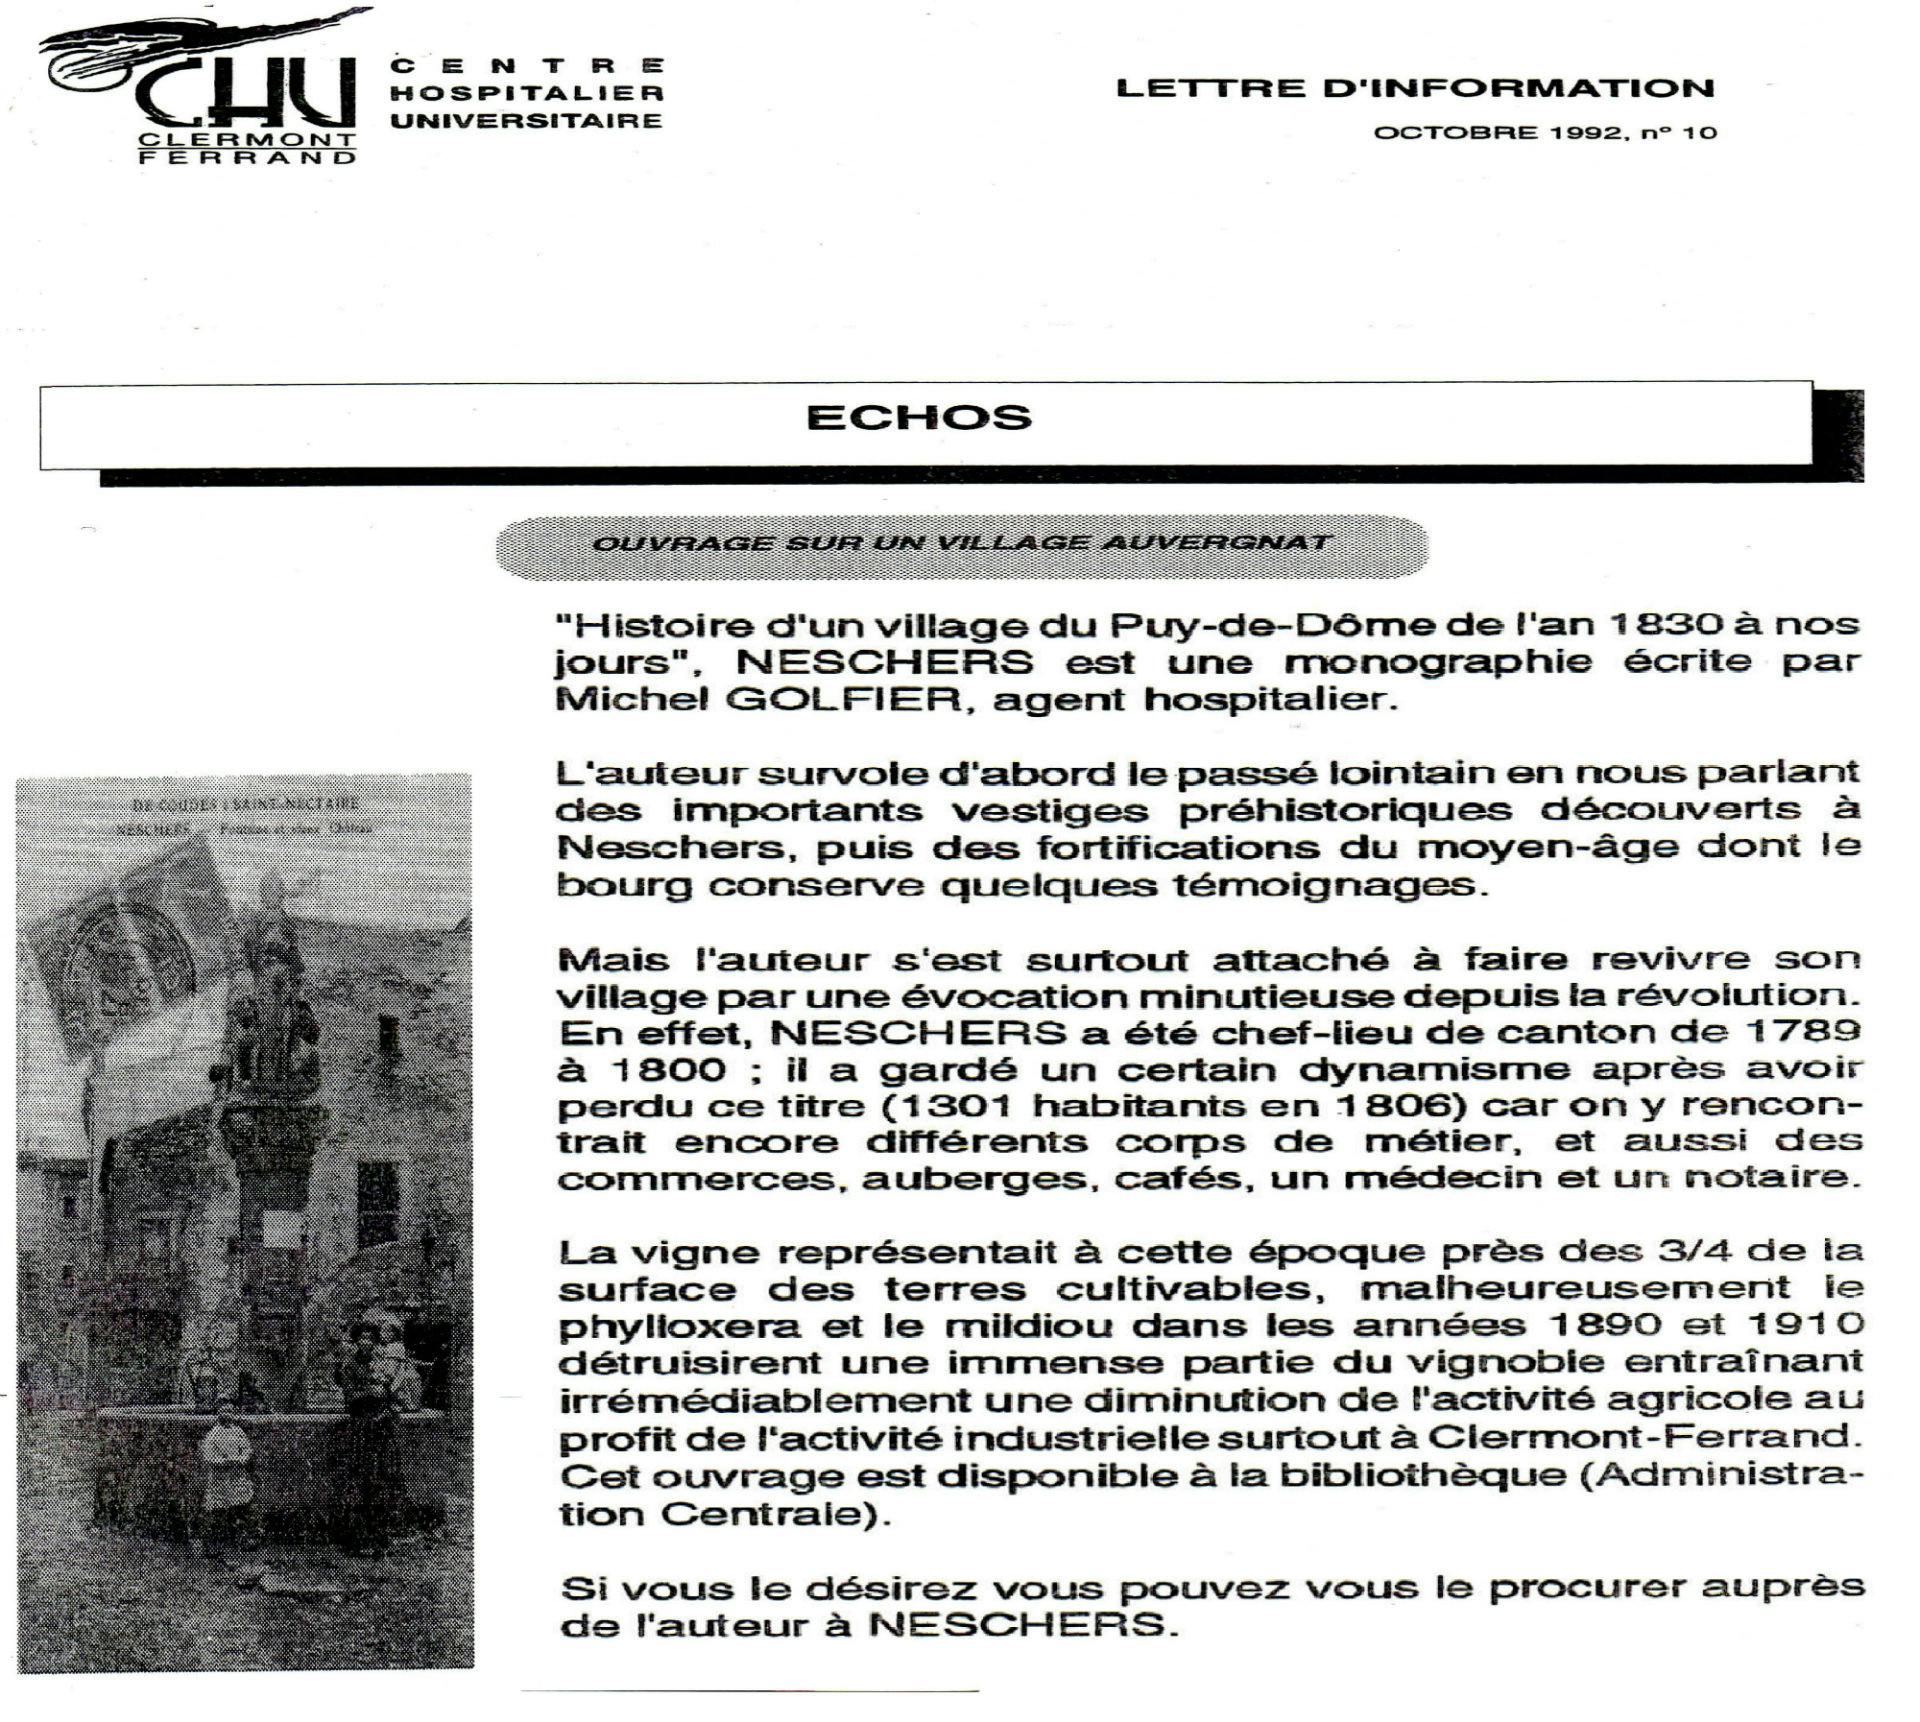 Articles de presse publiés en 1998 sur L'Histoire d'un village du Puy-de-Dôme de l'an 1830 à nos jours, Neschers.